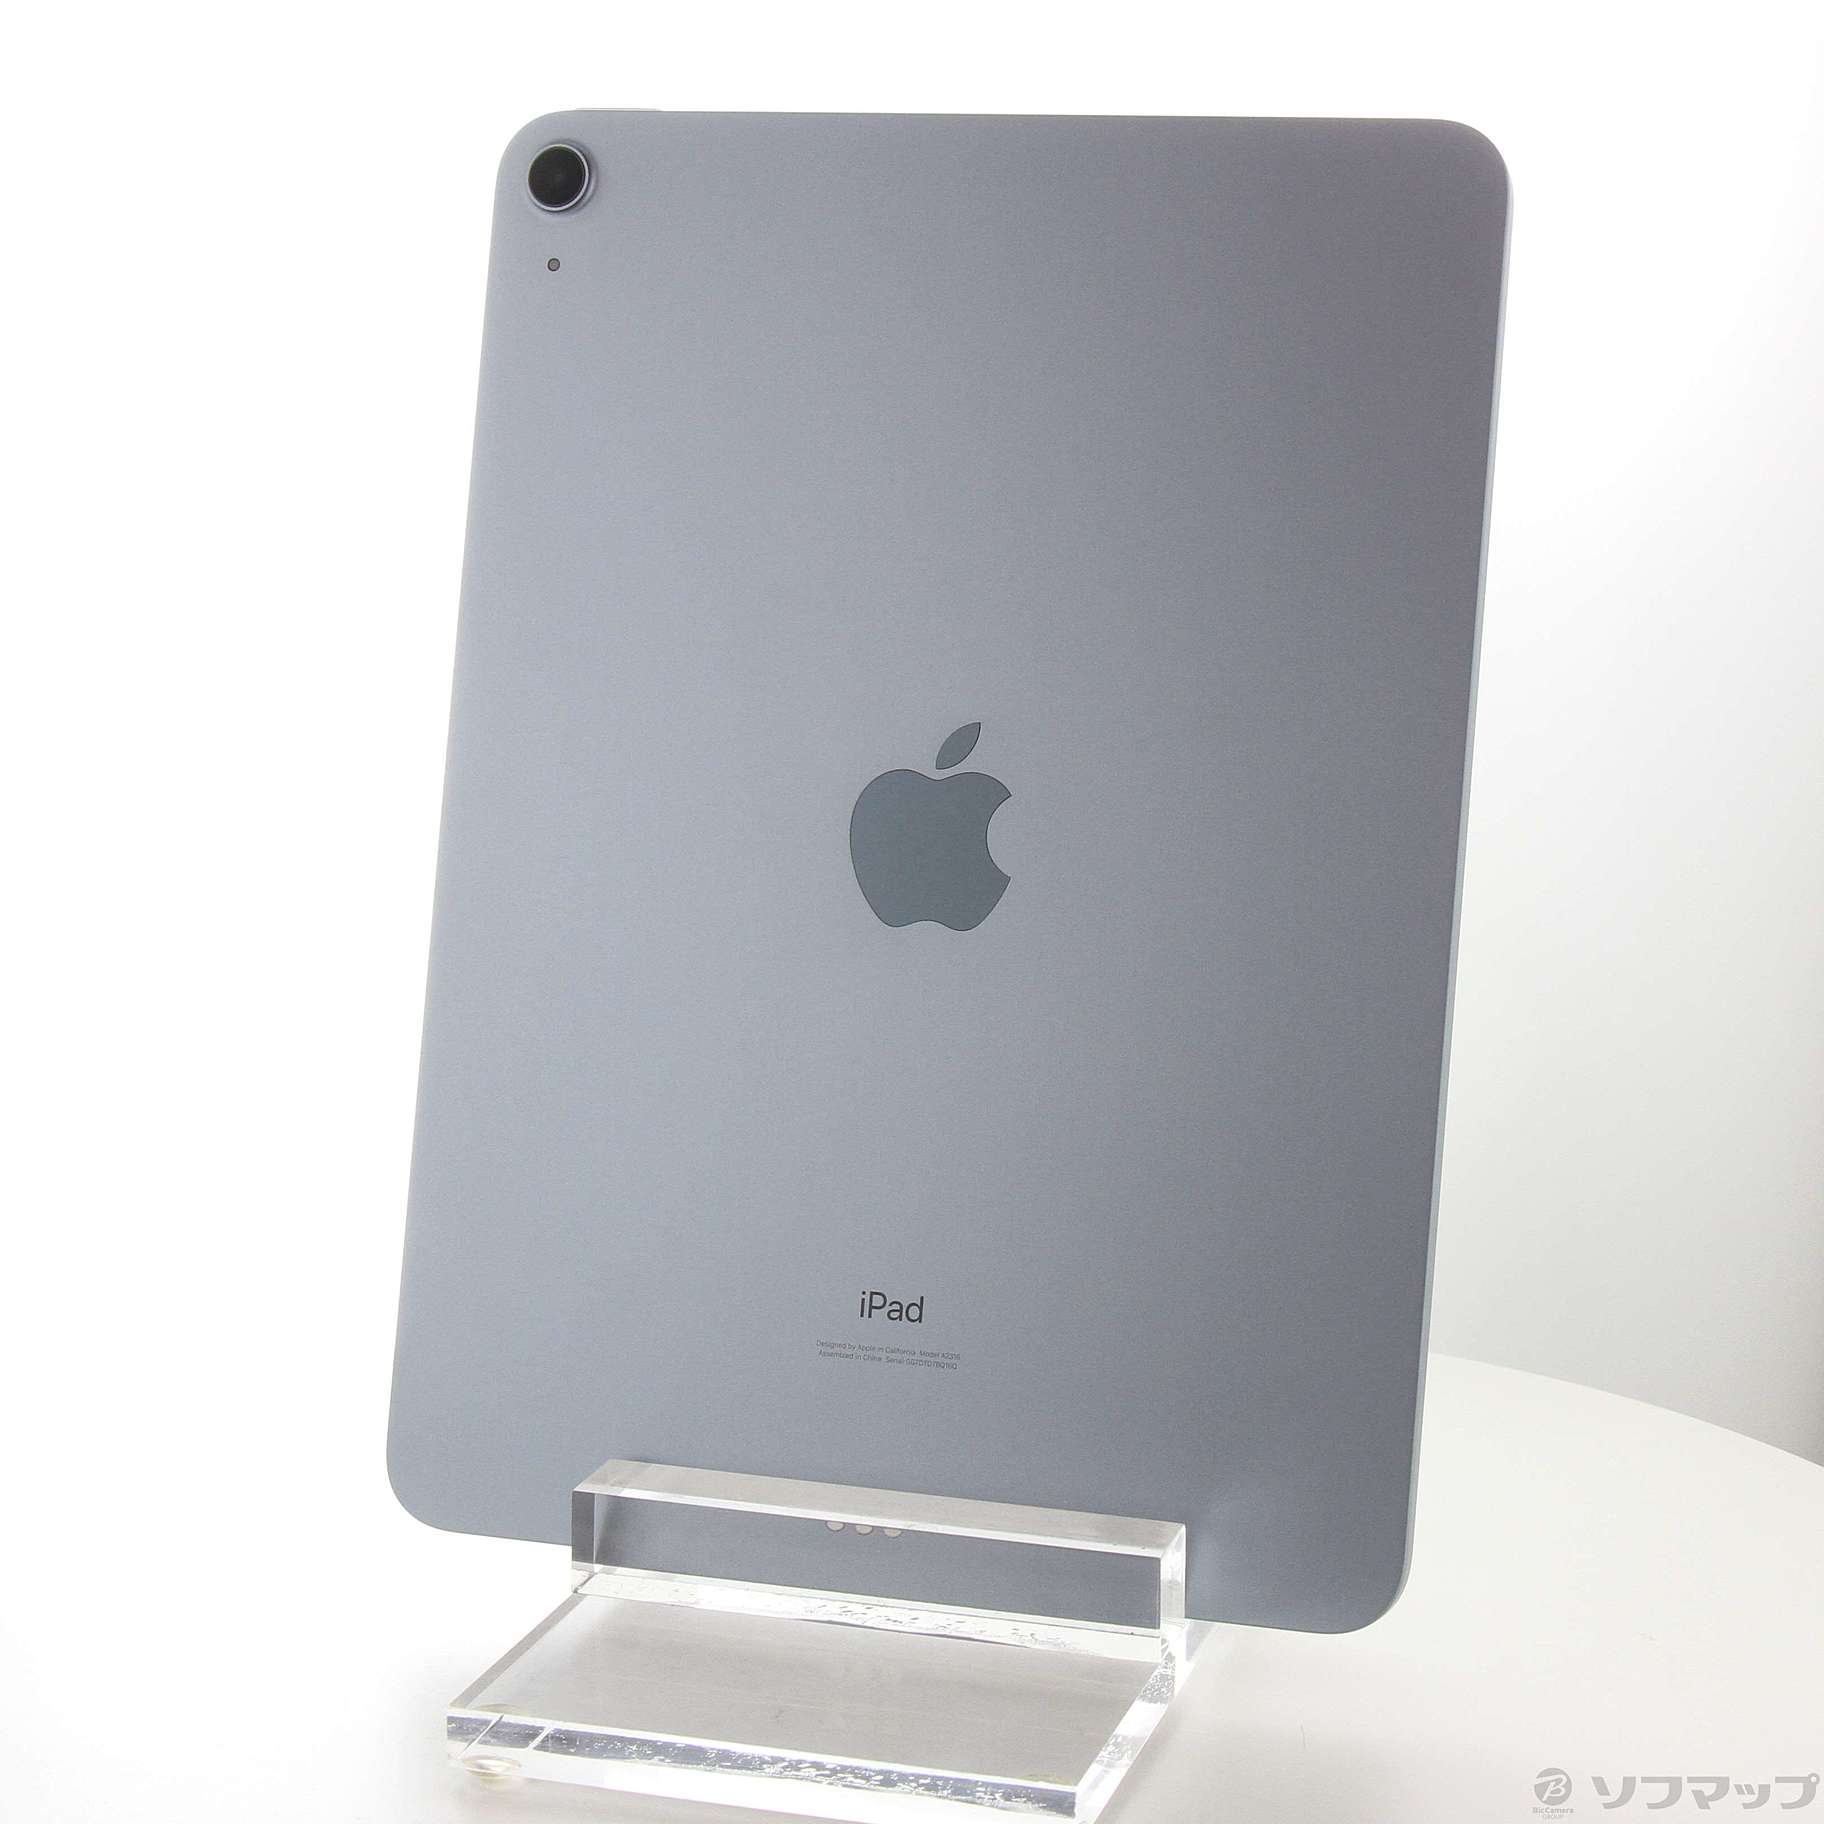 即発送可能 美品☆Apple WiFiモデル- iPadAir 64GB Wi-Fiモデル 第4